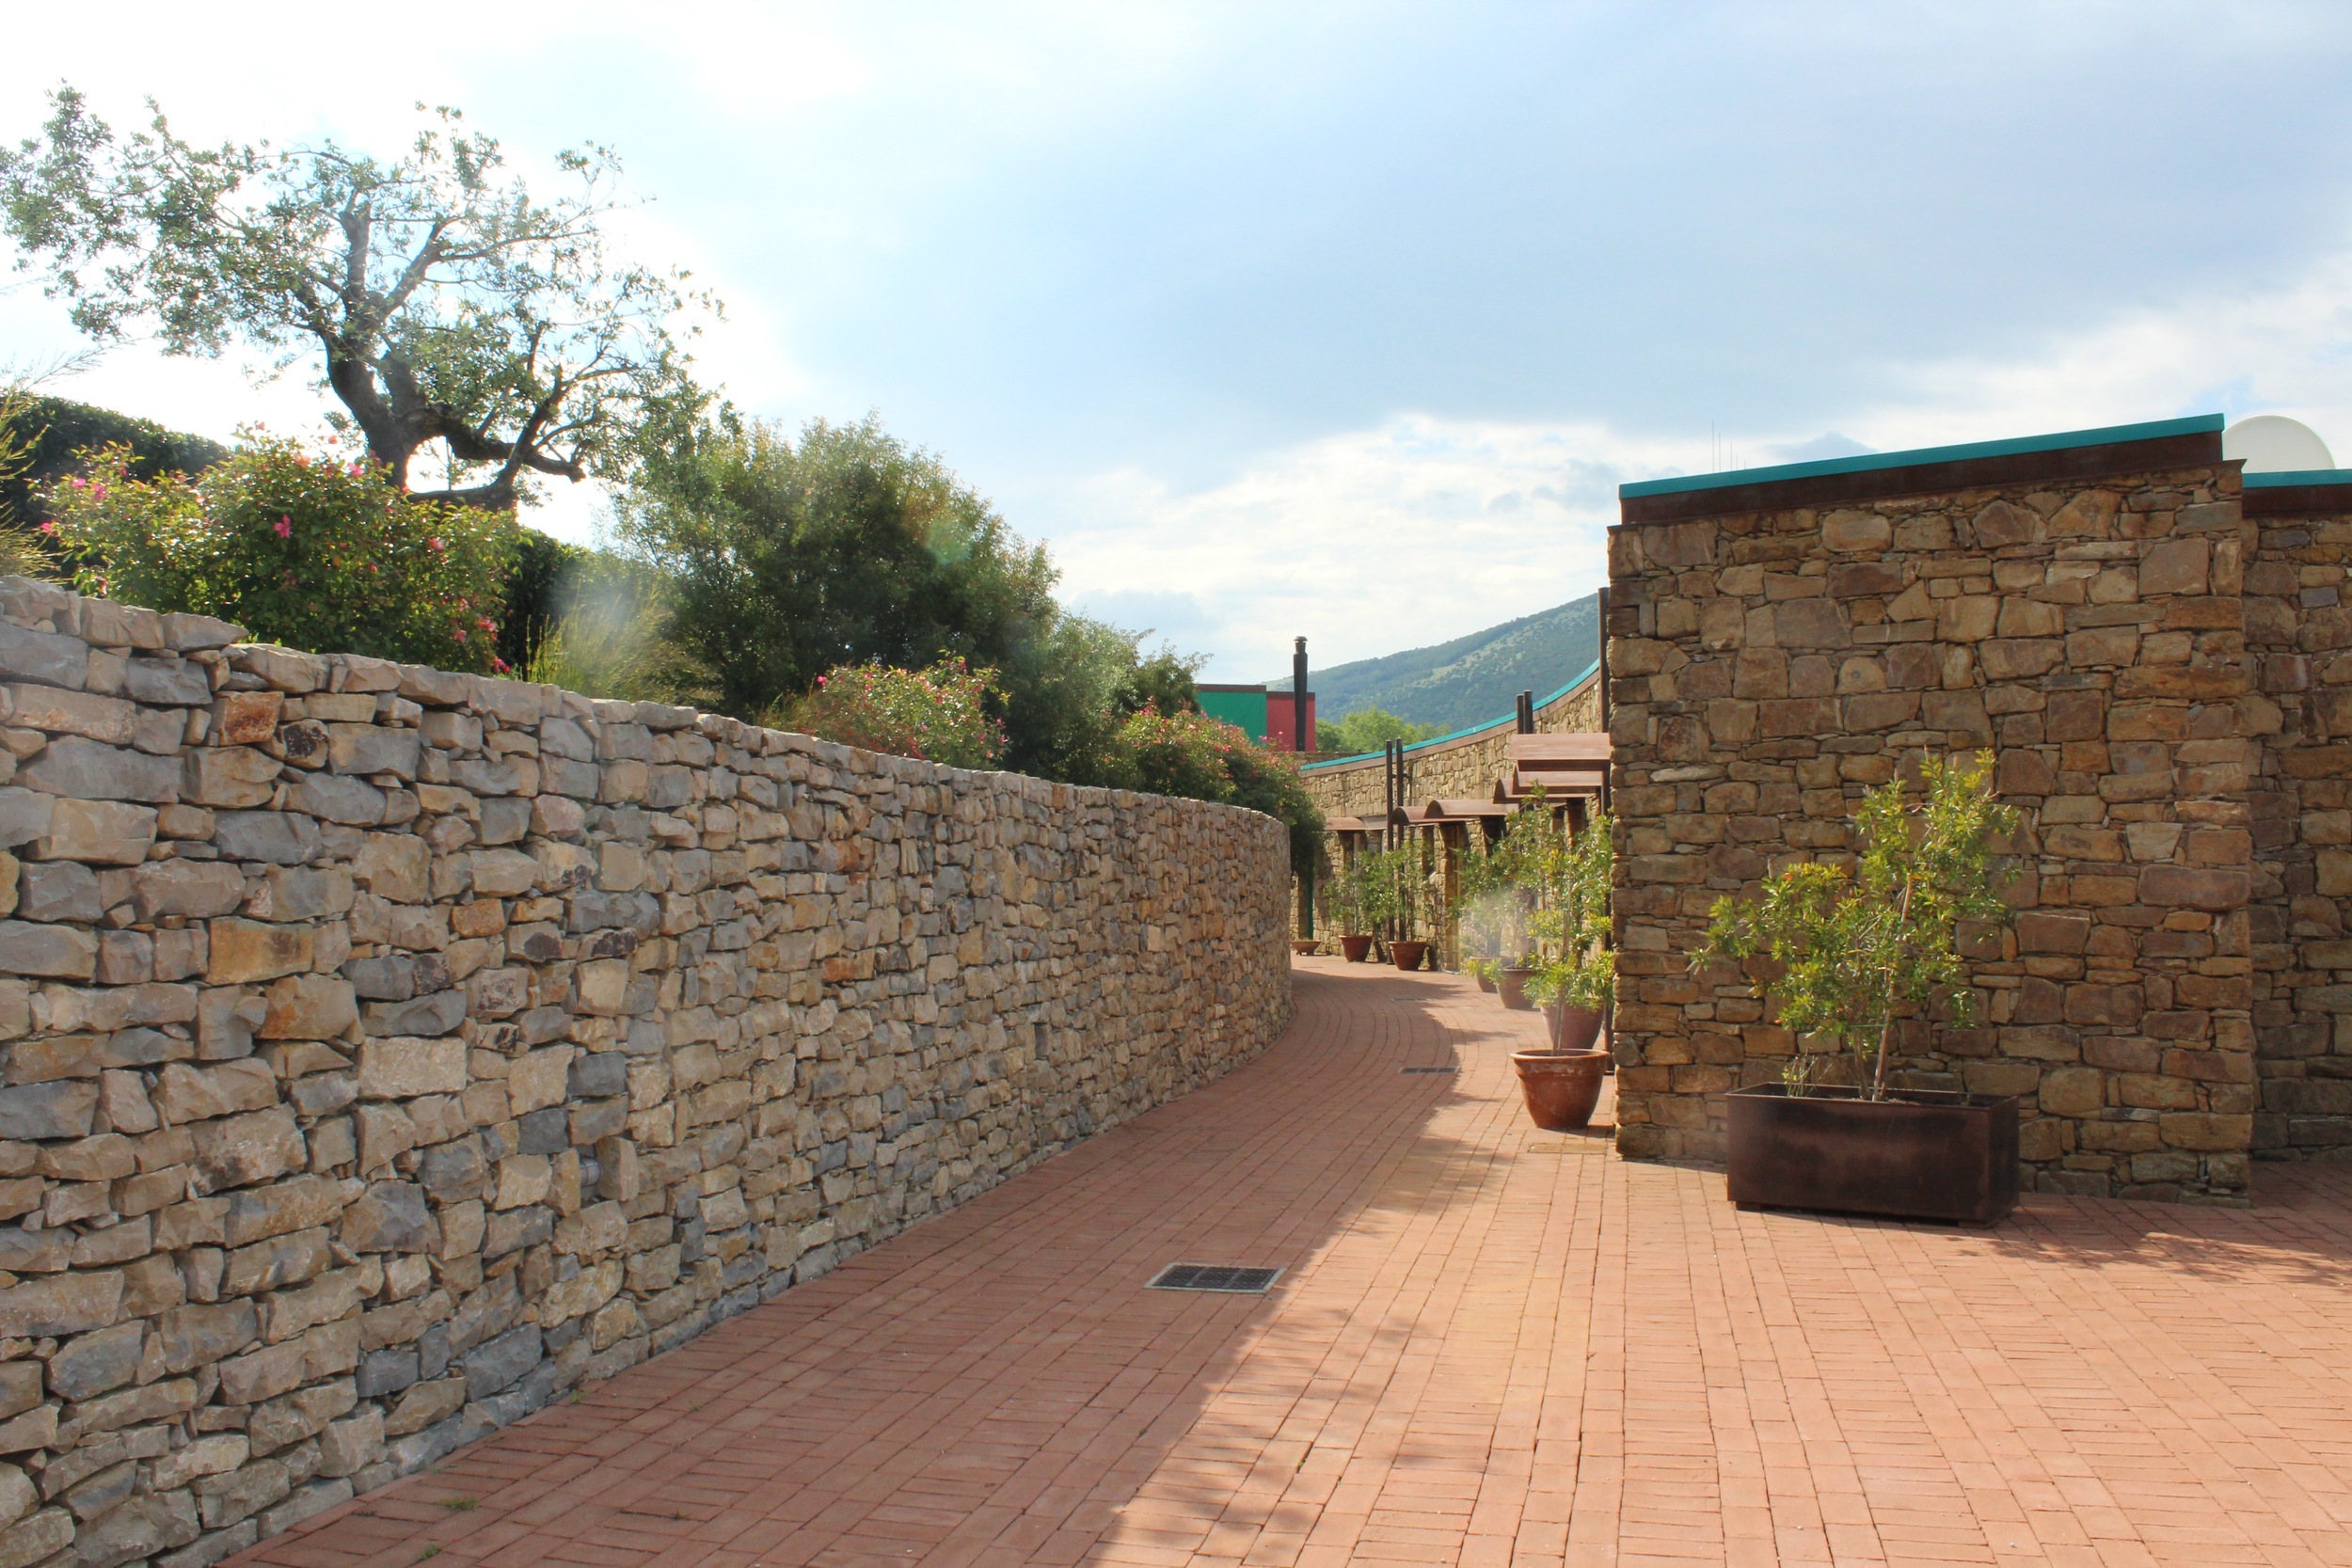 Day 1: Welcome to Borgo La Pietraia